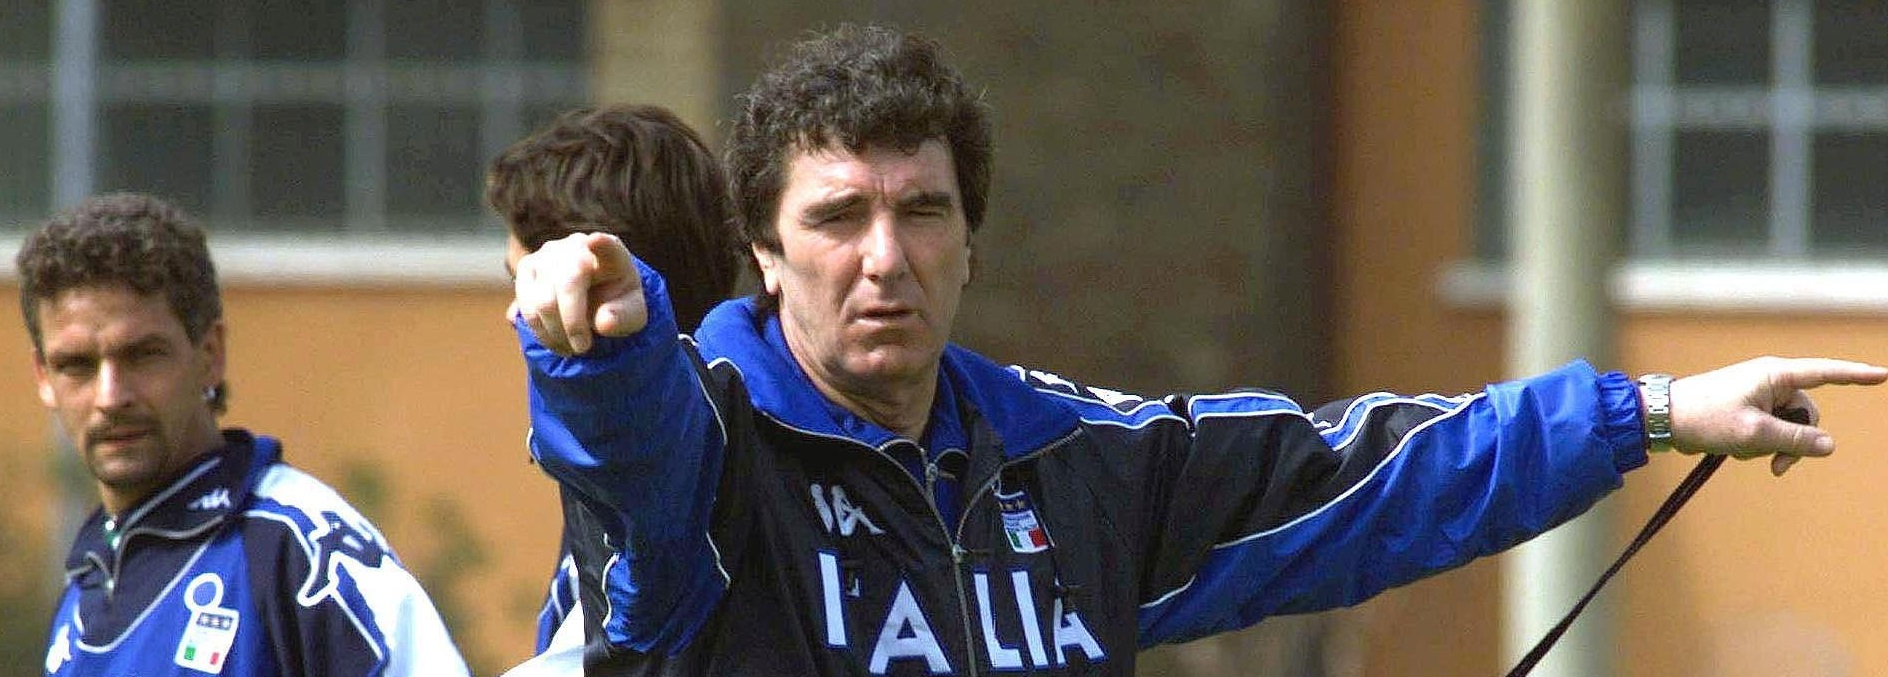 Legendarul portar Dino Zoff e de partea lui Acerbi în scandalul de rasism din Serie A